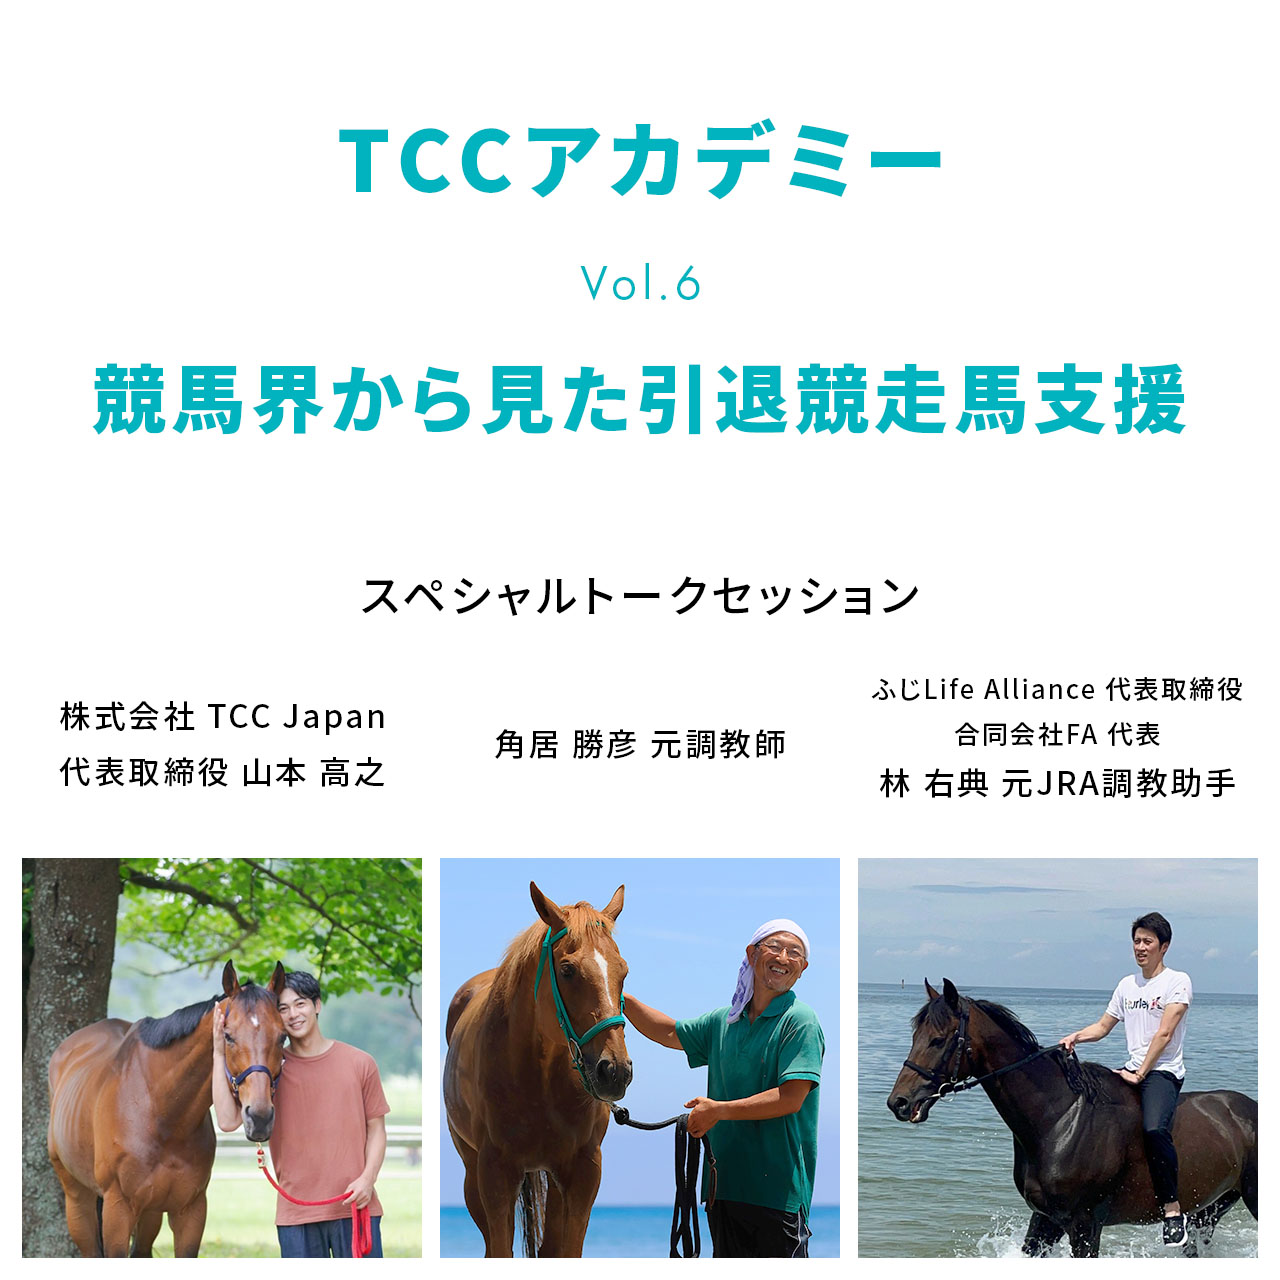 【追加ゲスト】TCCアカデミー vol.6 トークセッションに林 右典 元調教助手が参加決定!